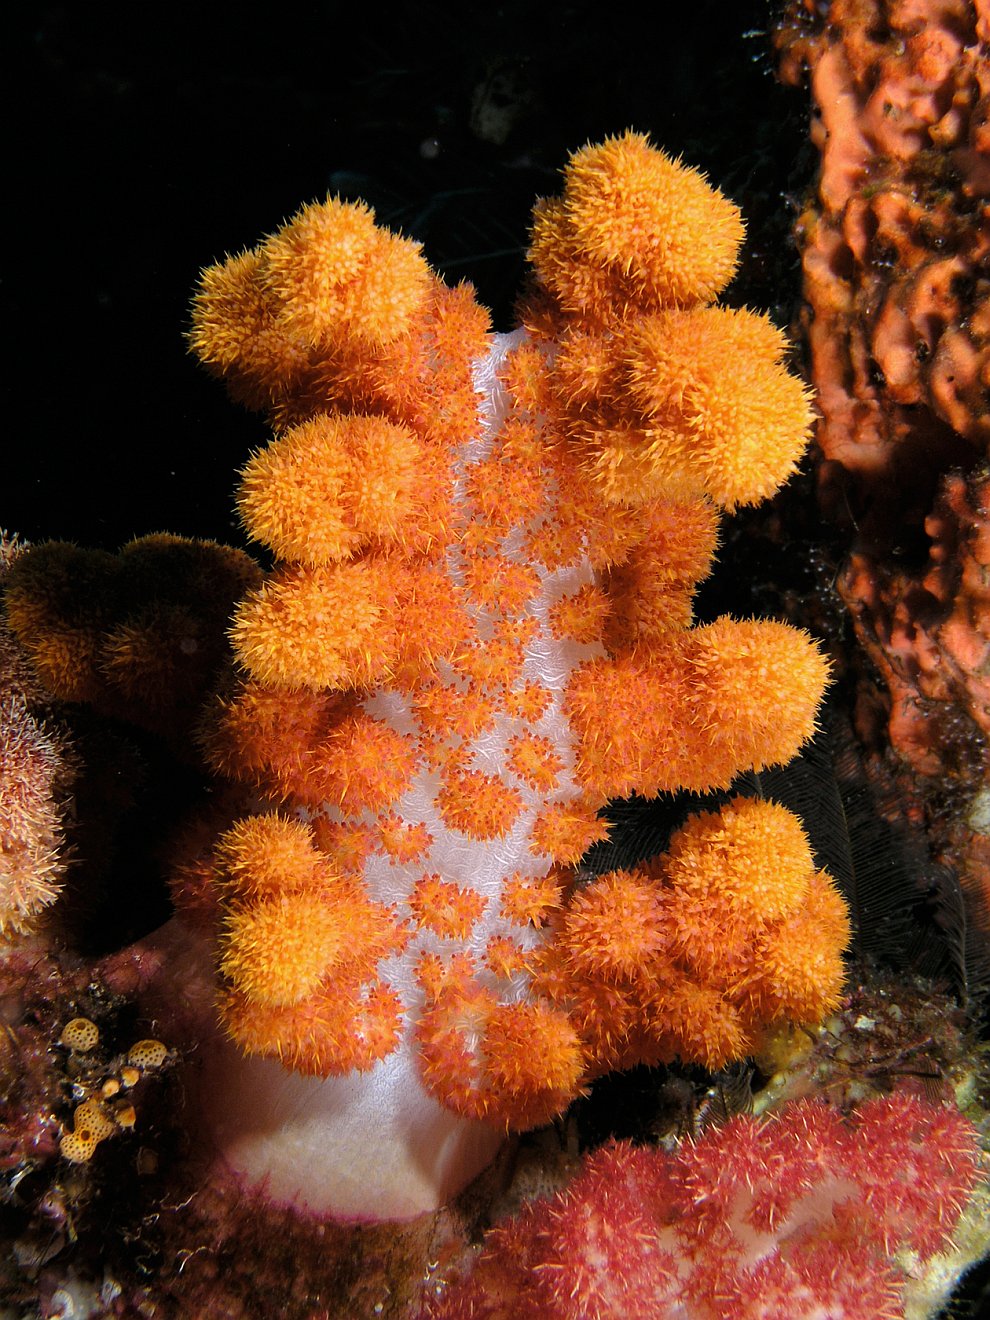 Кораллы - древнейшие существа на Земле кораллы,море,природа